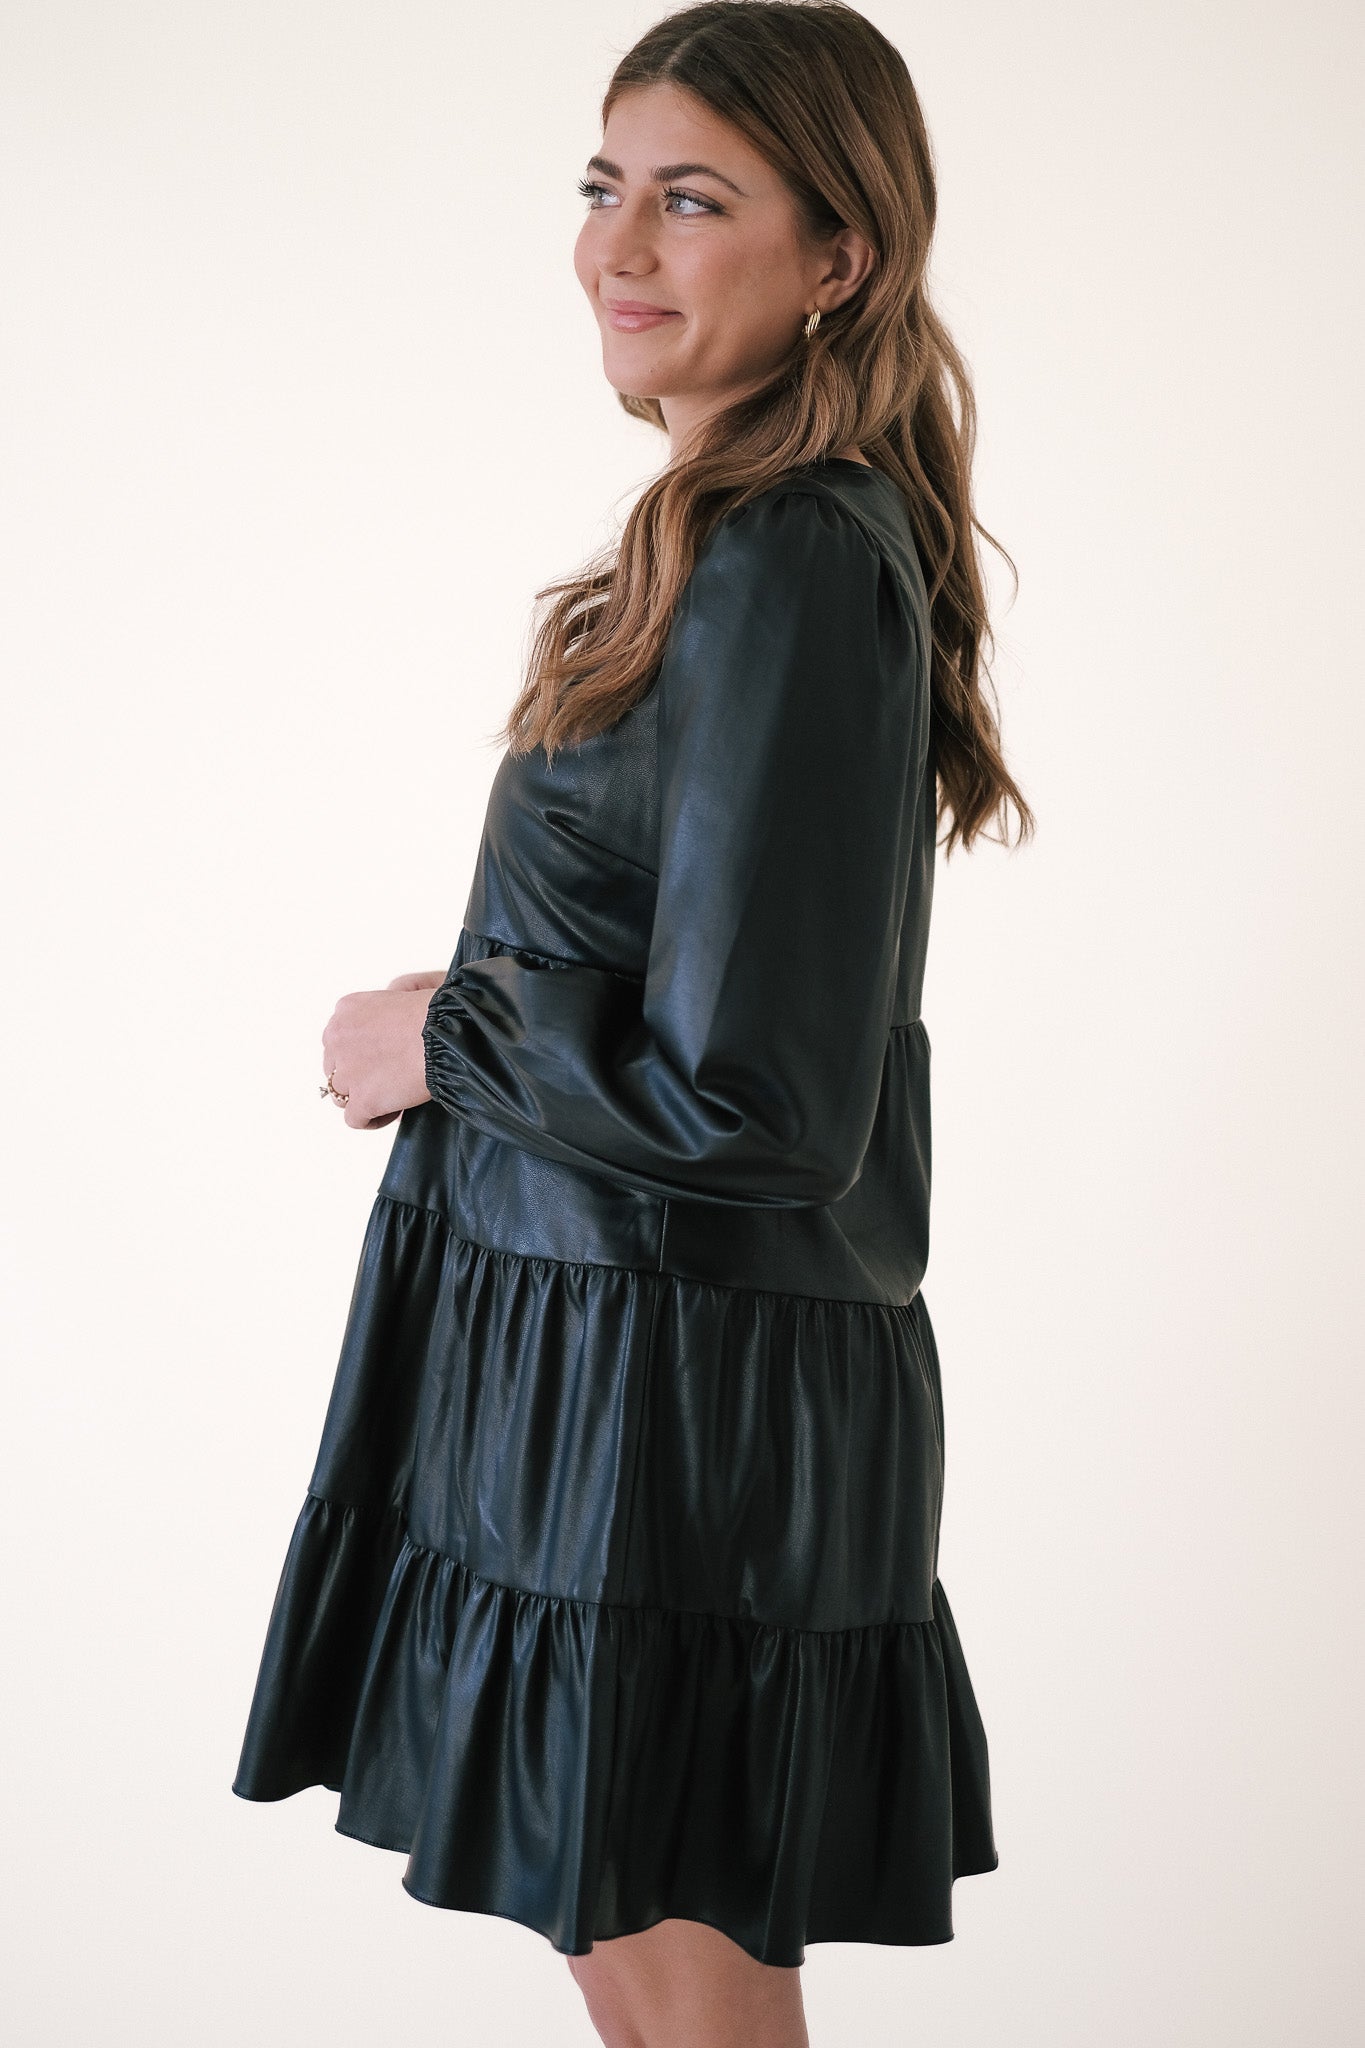 Lucy Paris Adler Black Faux Leather Tiered Mini Dress (XS)